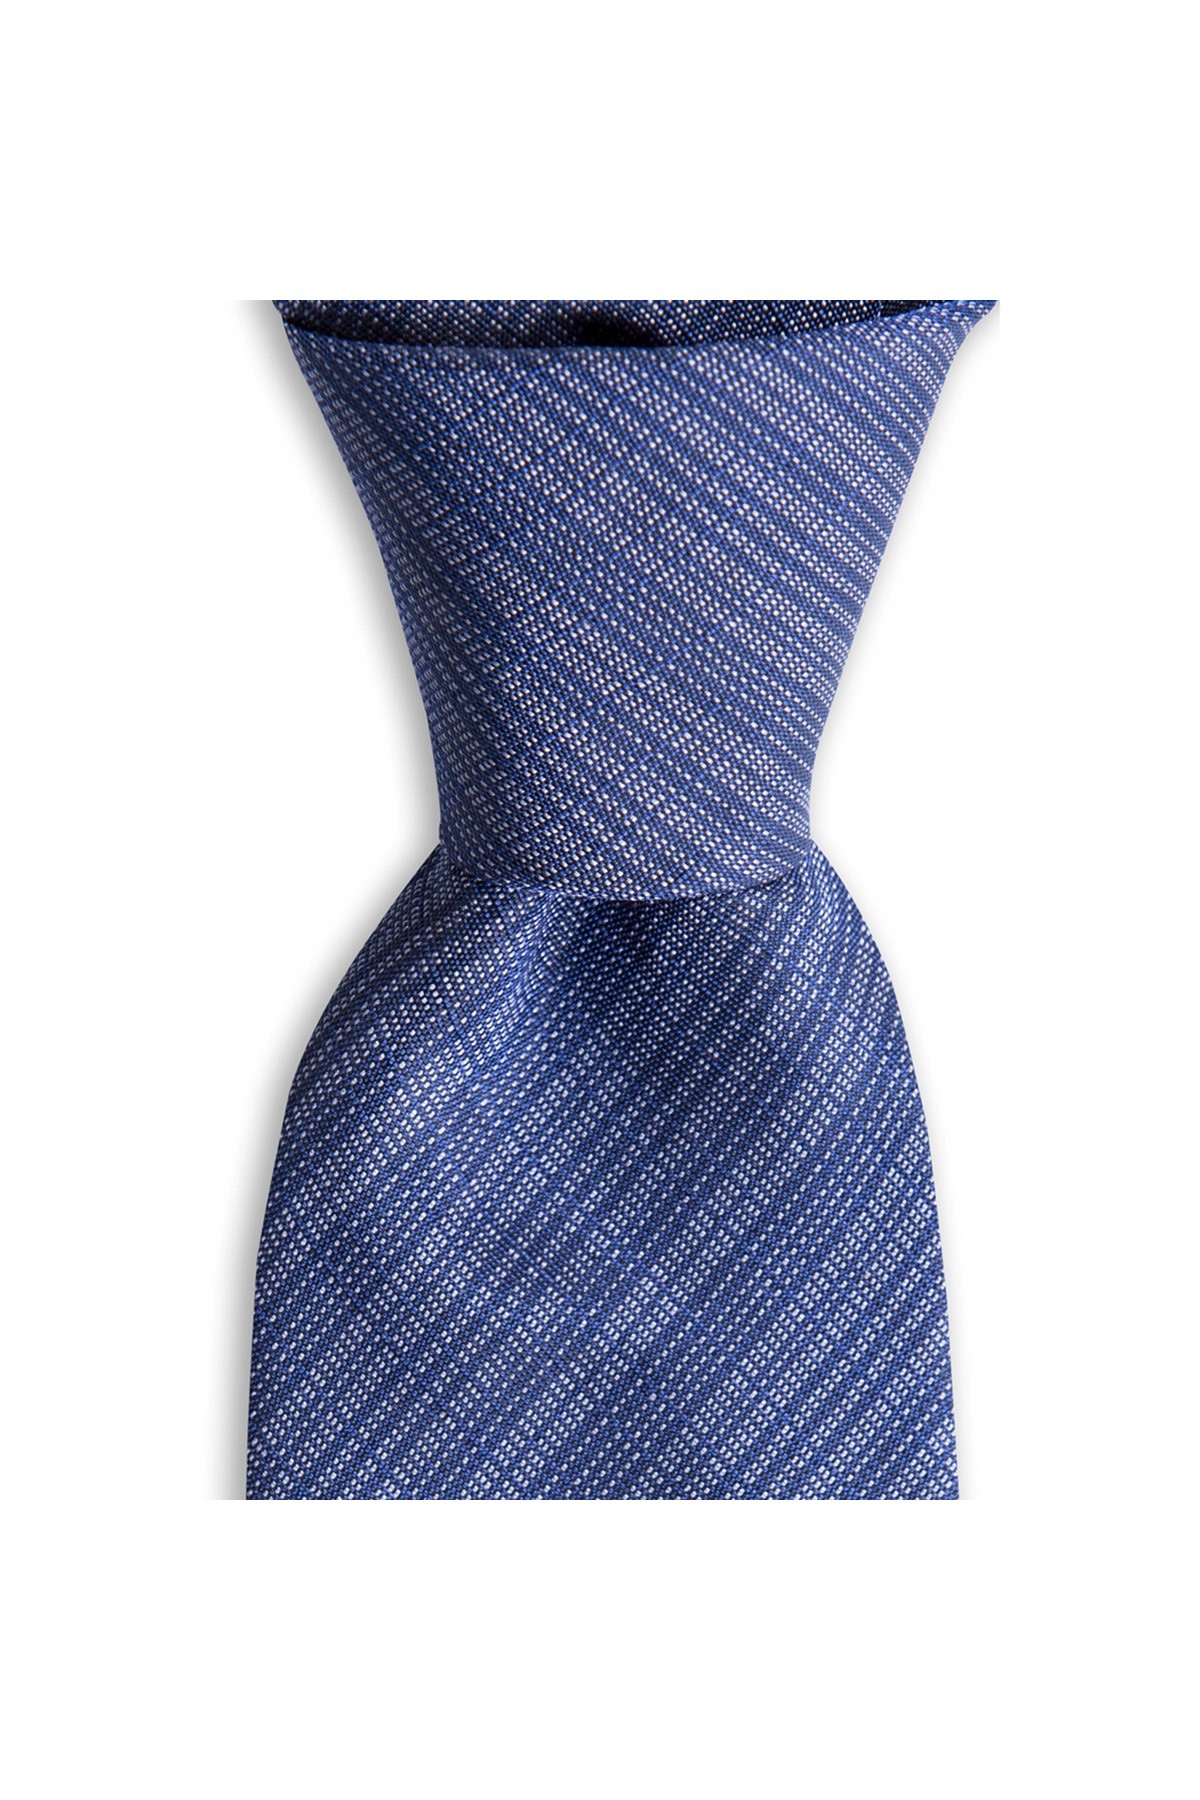 İnce çizgi desenli 8 cm genişliğinde klasik ipek kravat